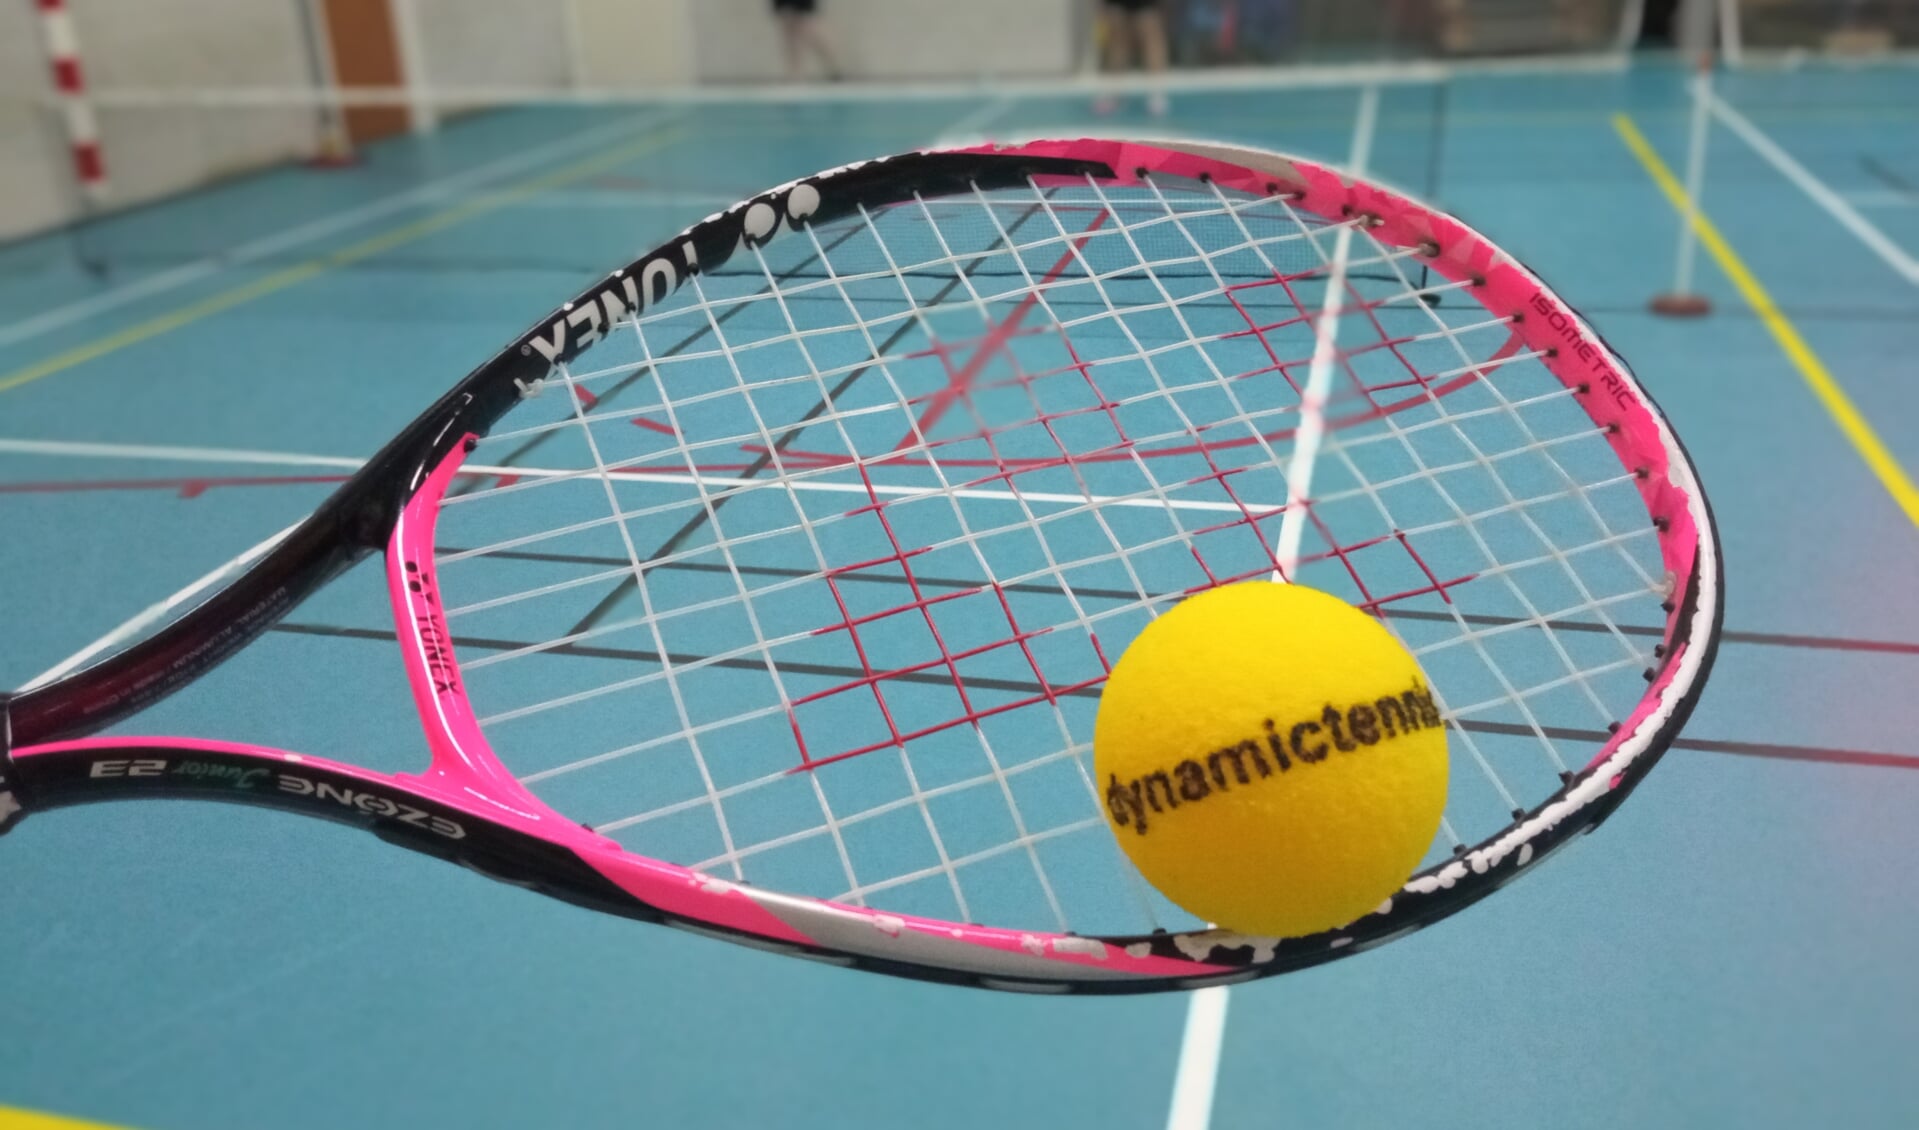 Dynamic tennis, nu ook voor jongeren. Foto PR